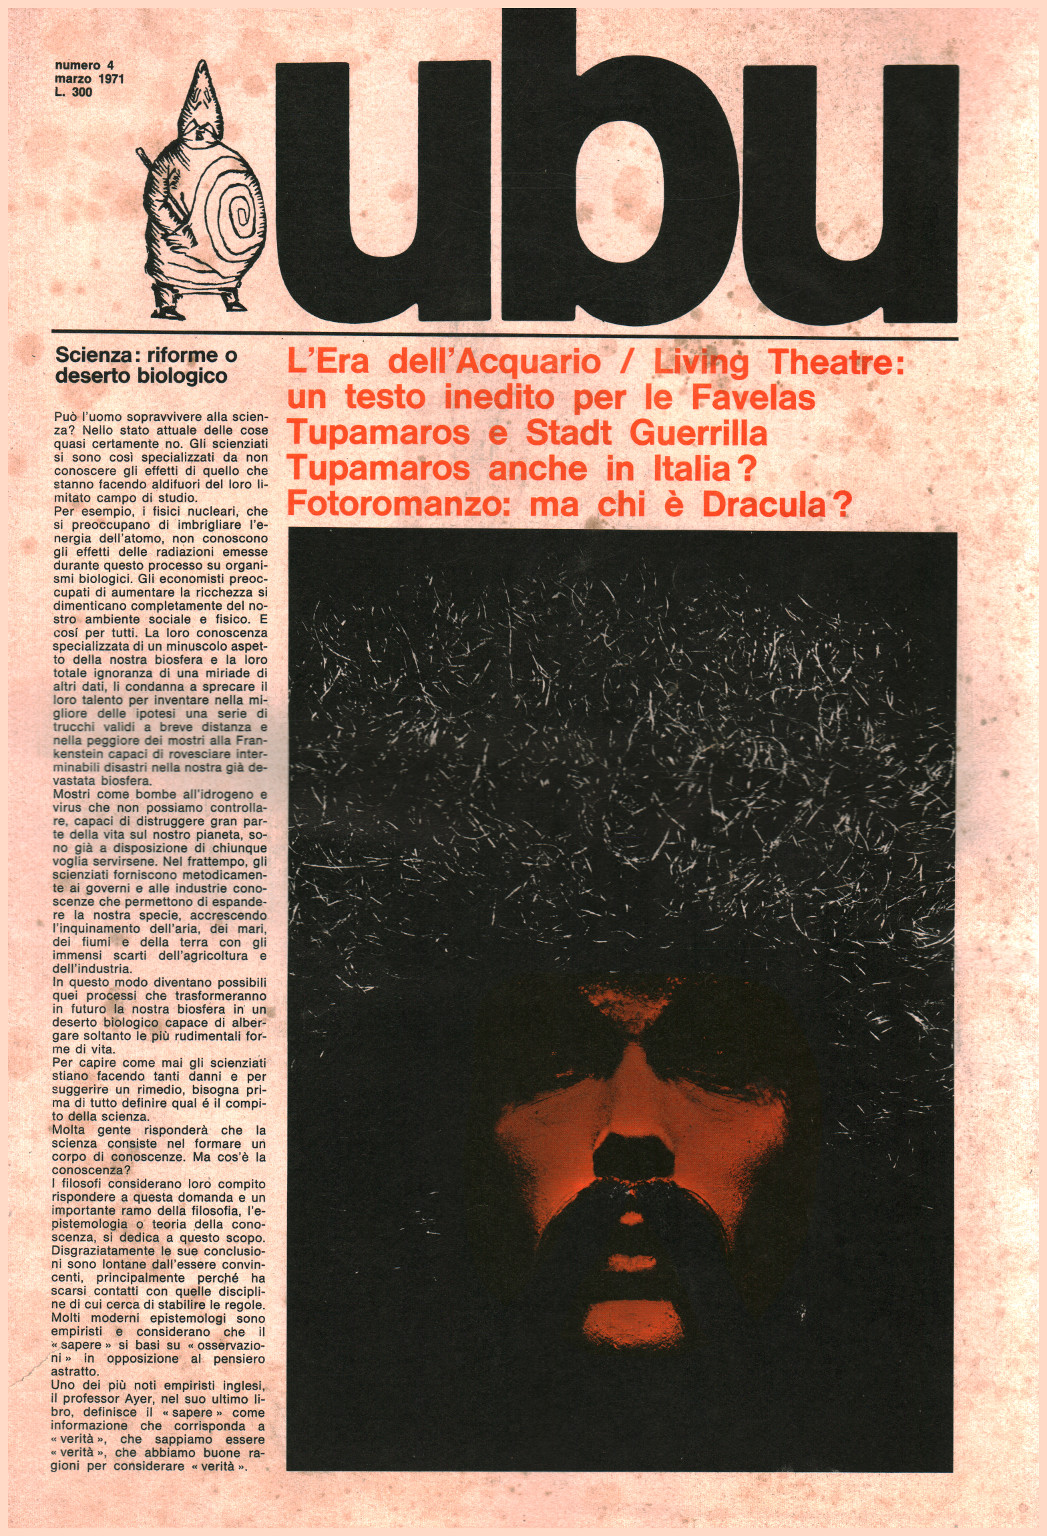 Ubu número 4 de marzo de 1971, s.una.